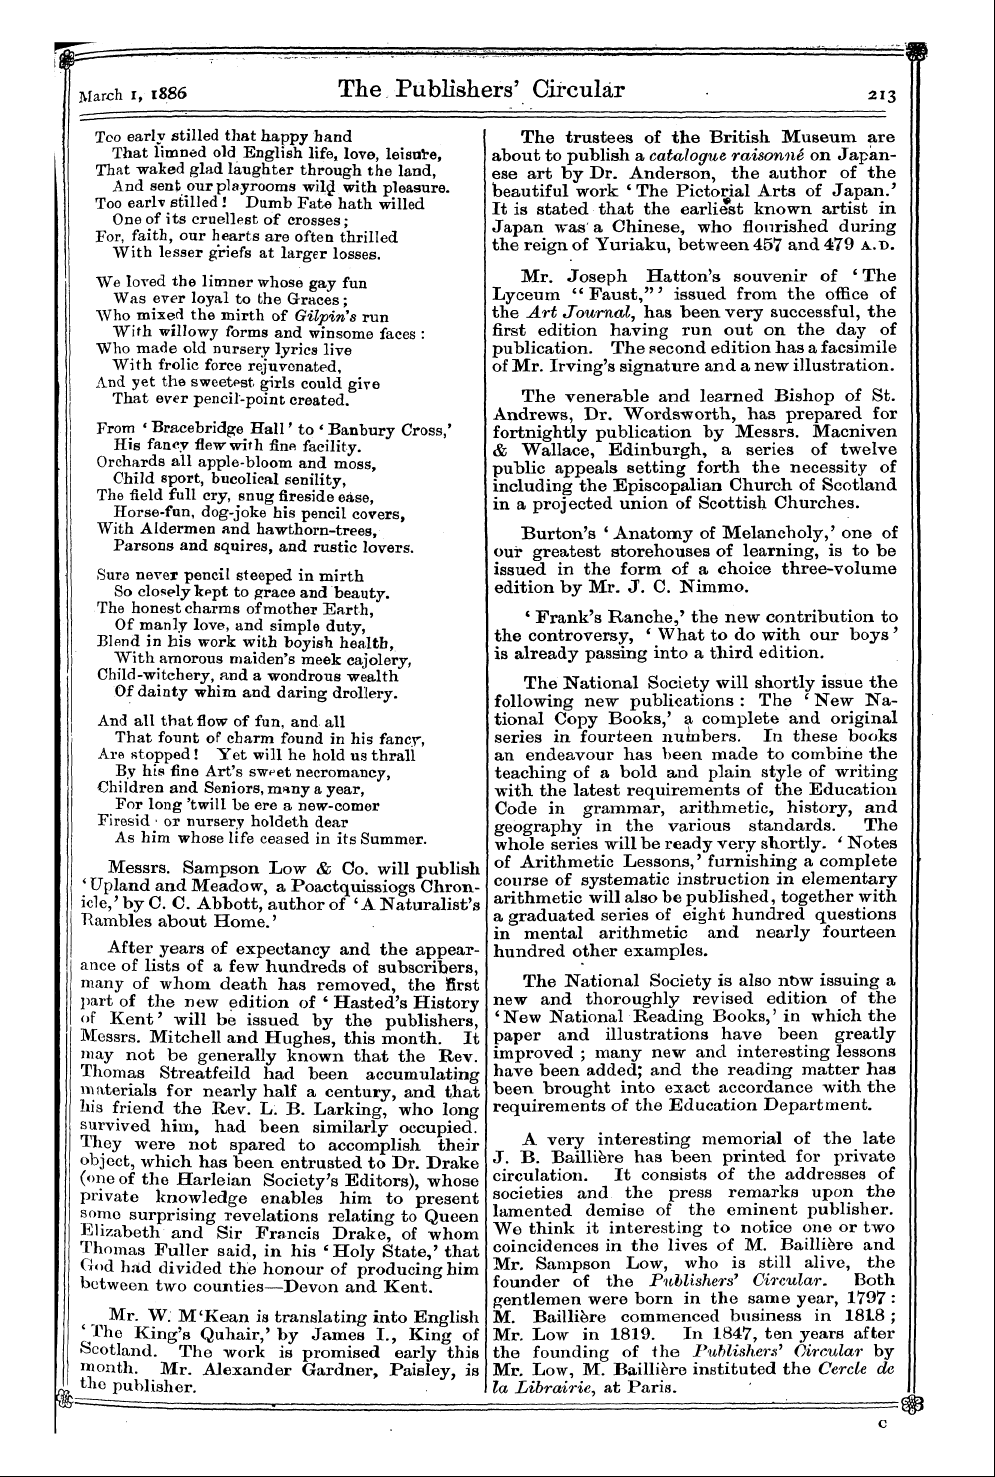 Publishers’ Circular (1880-1890): jS F Y, 1st edition - Ar01901